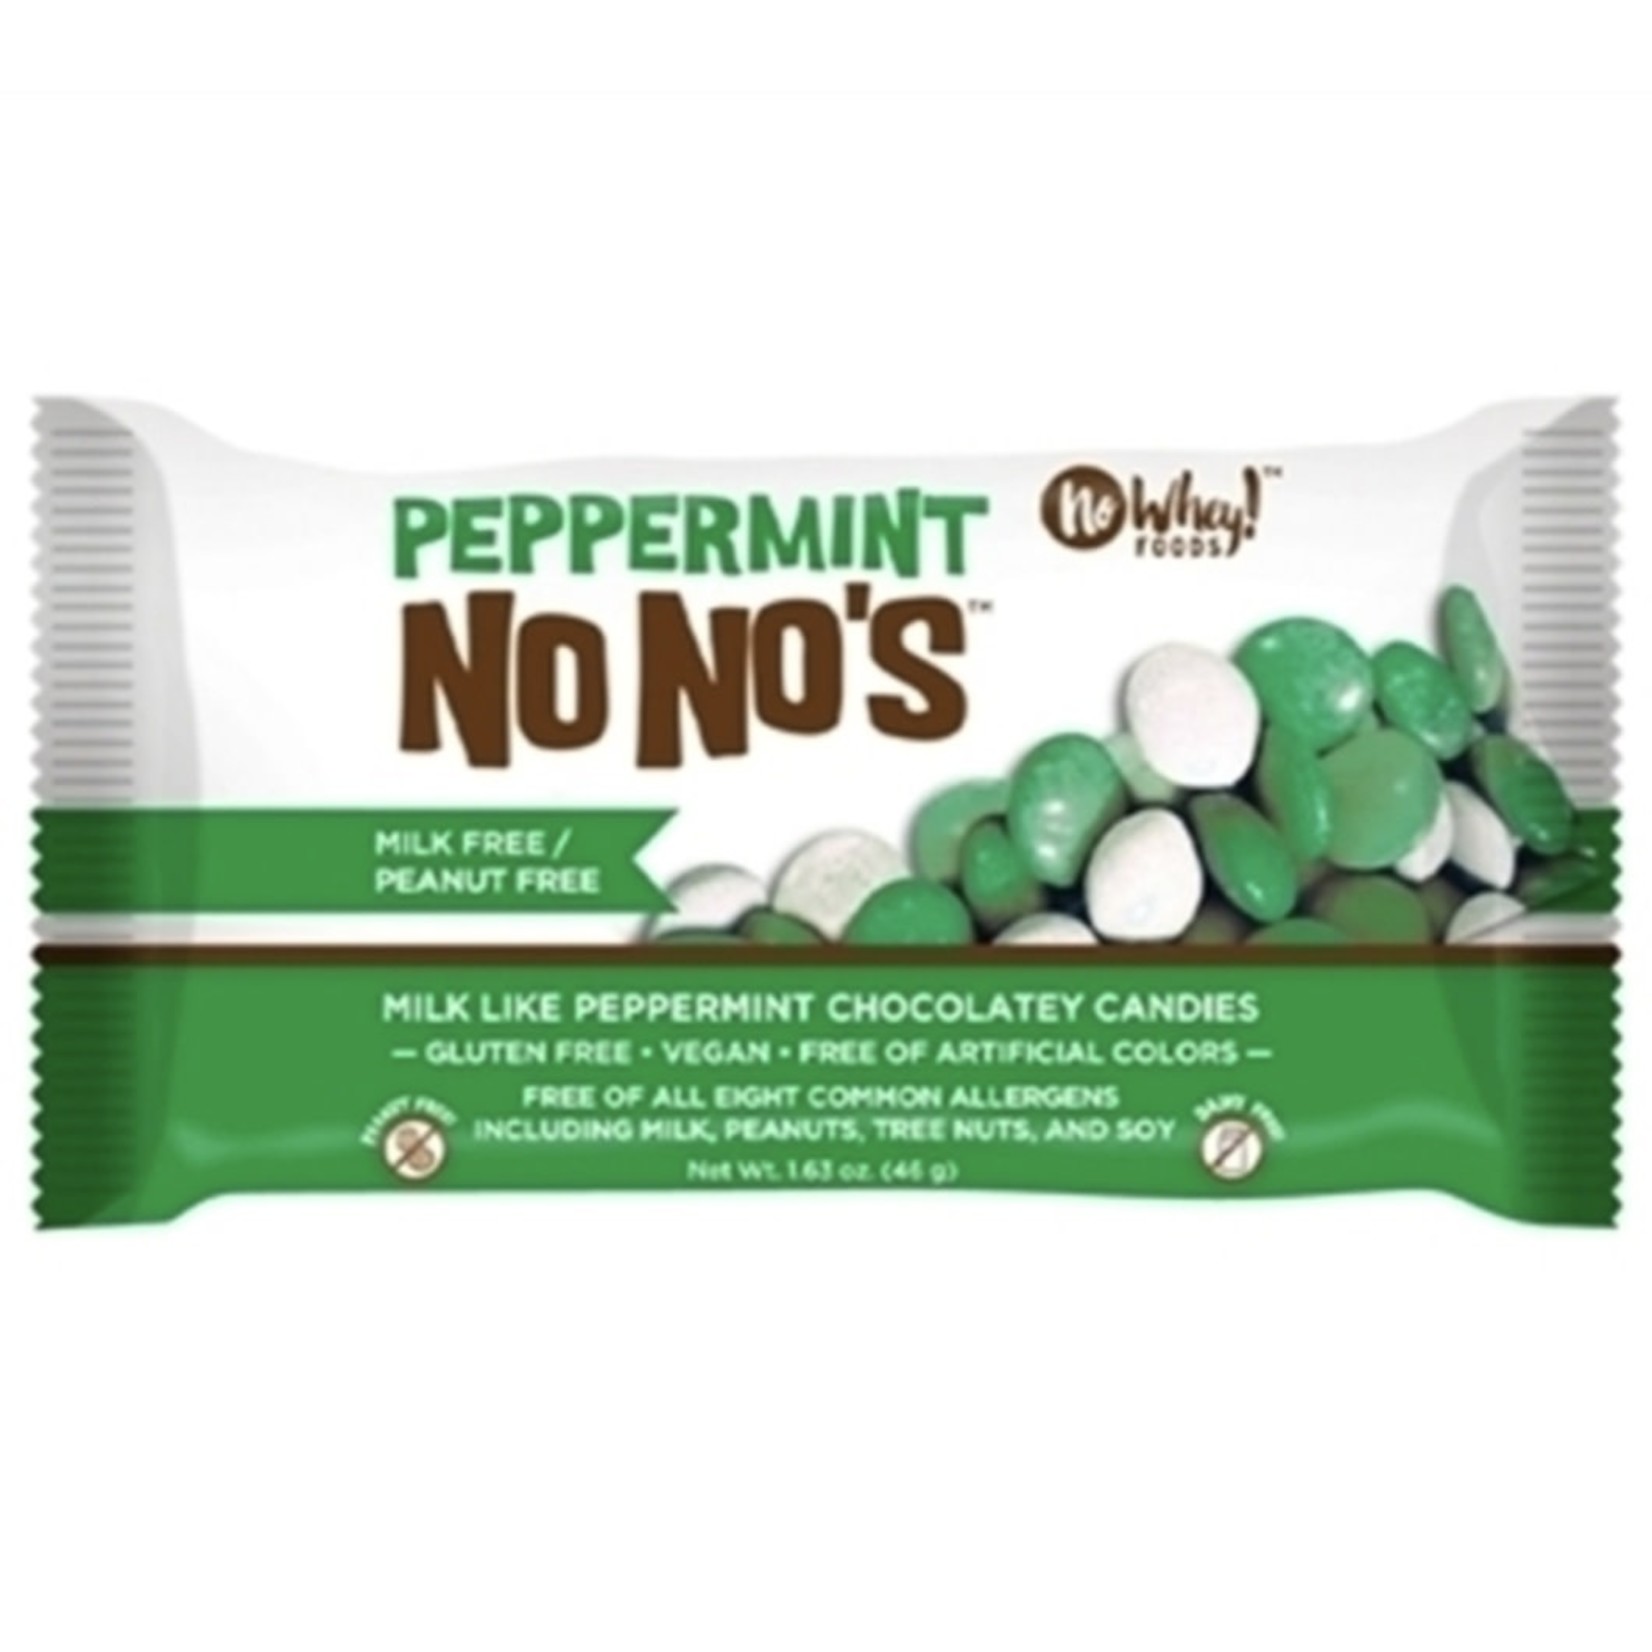 No Whey! No Whey! Peppermint No No’s